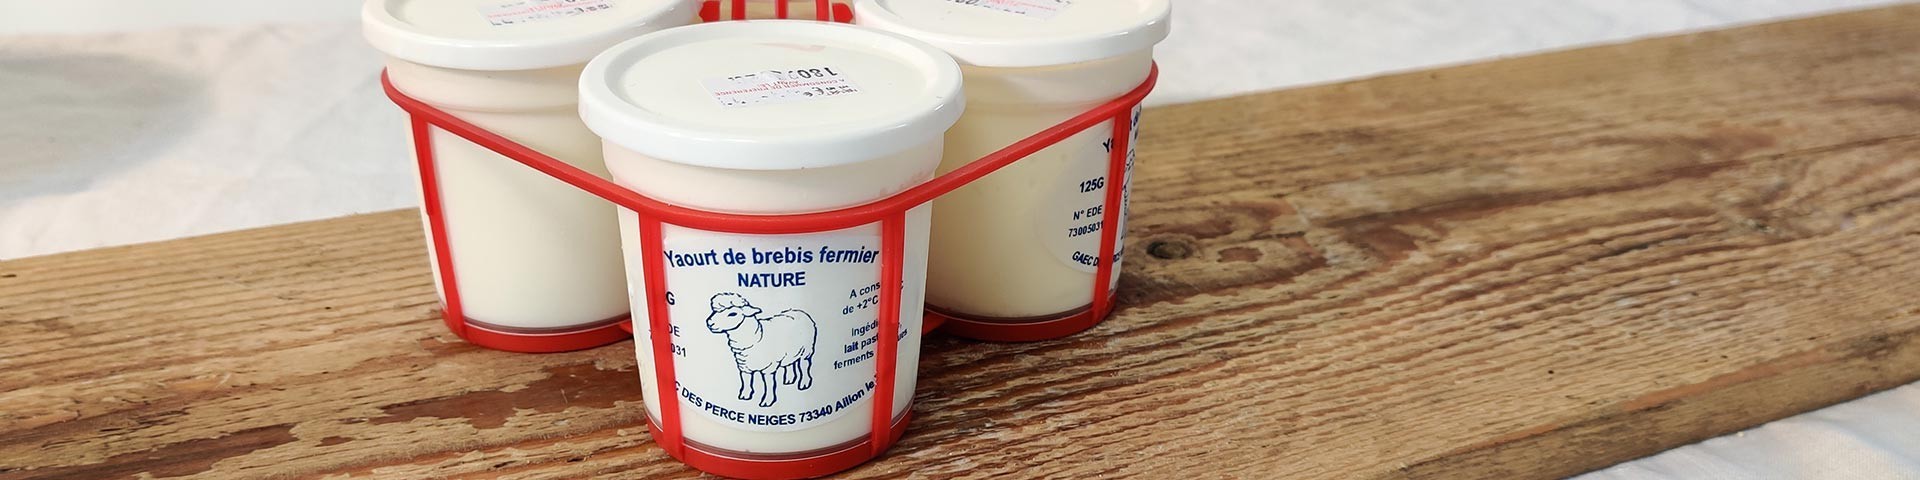 Les produits laitiers de Savoie au lait de brebis